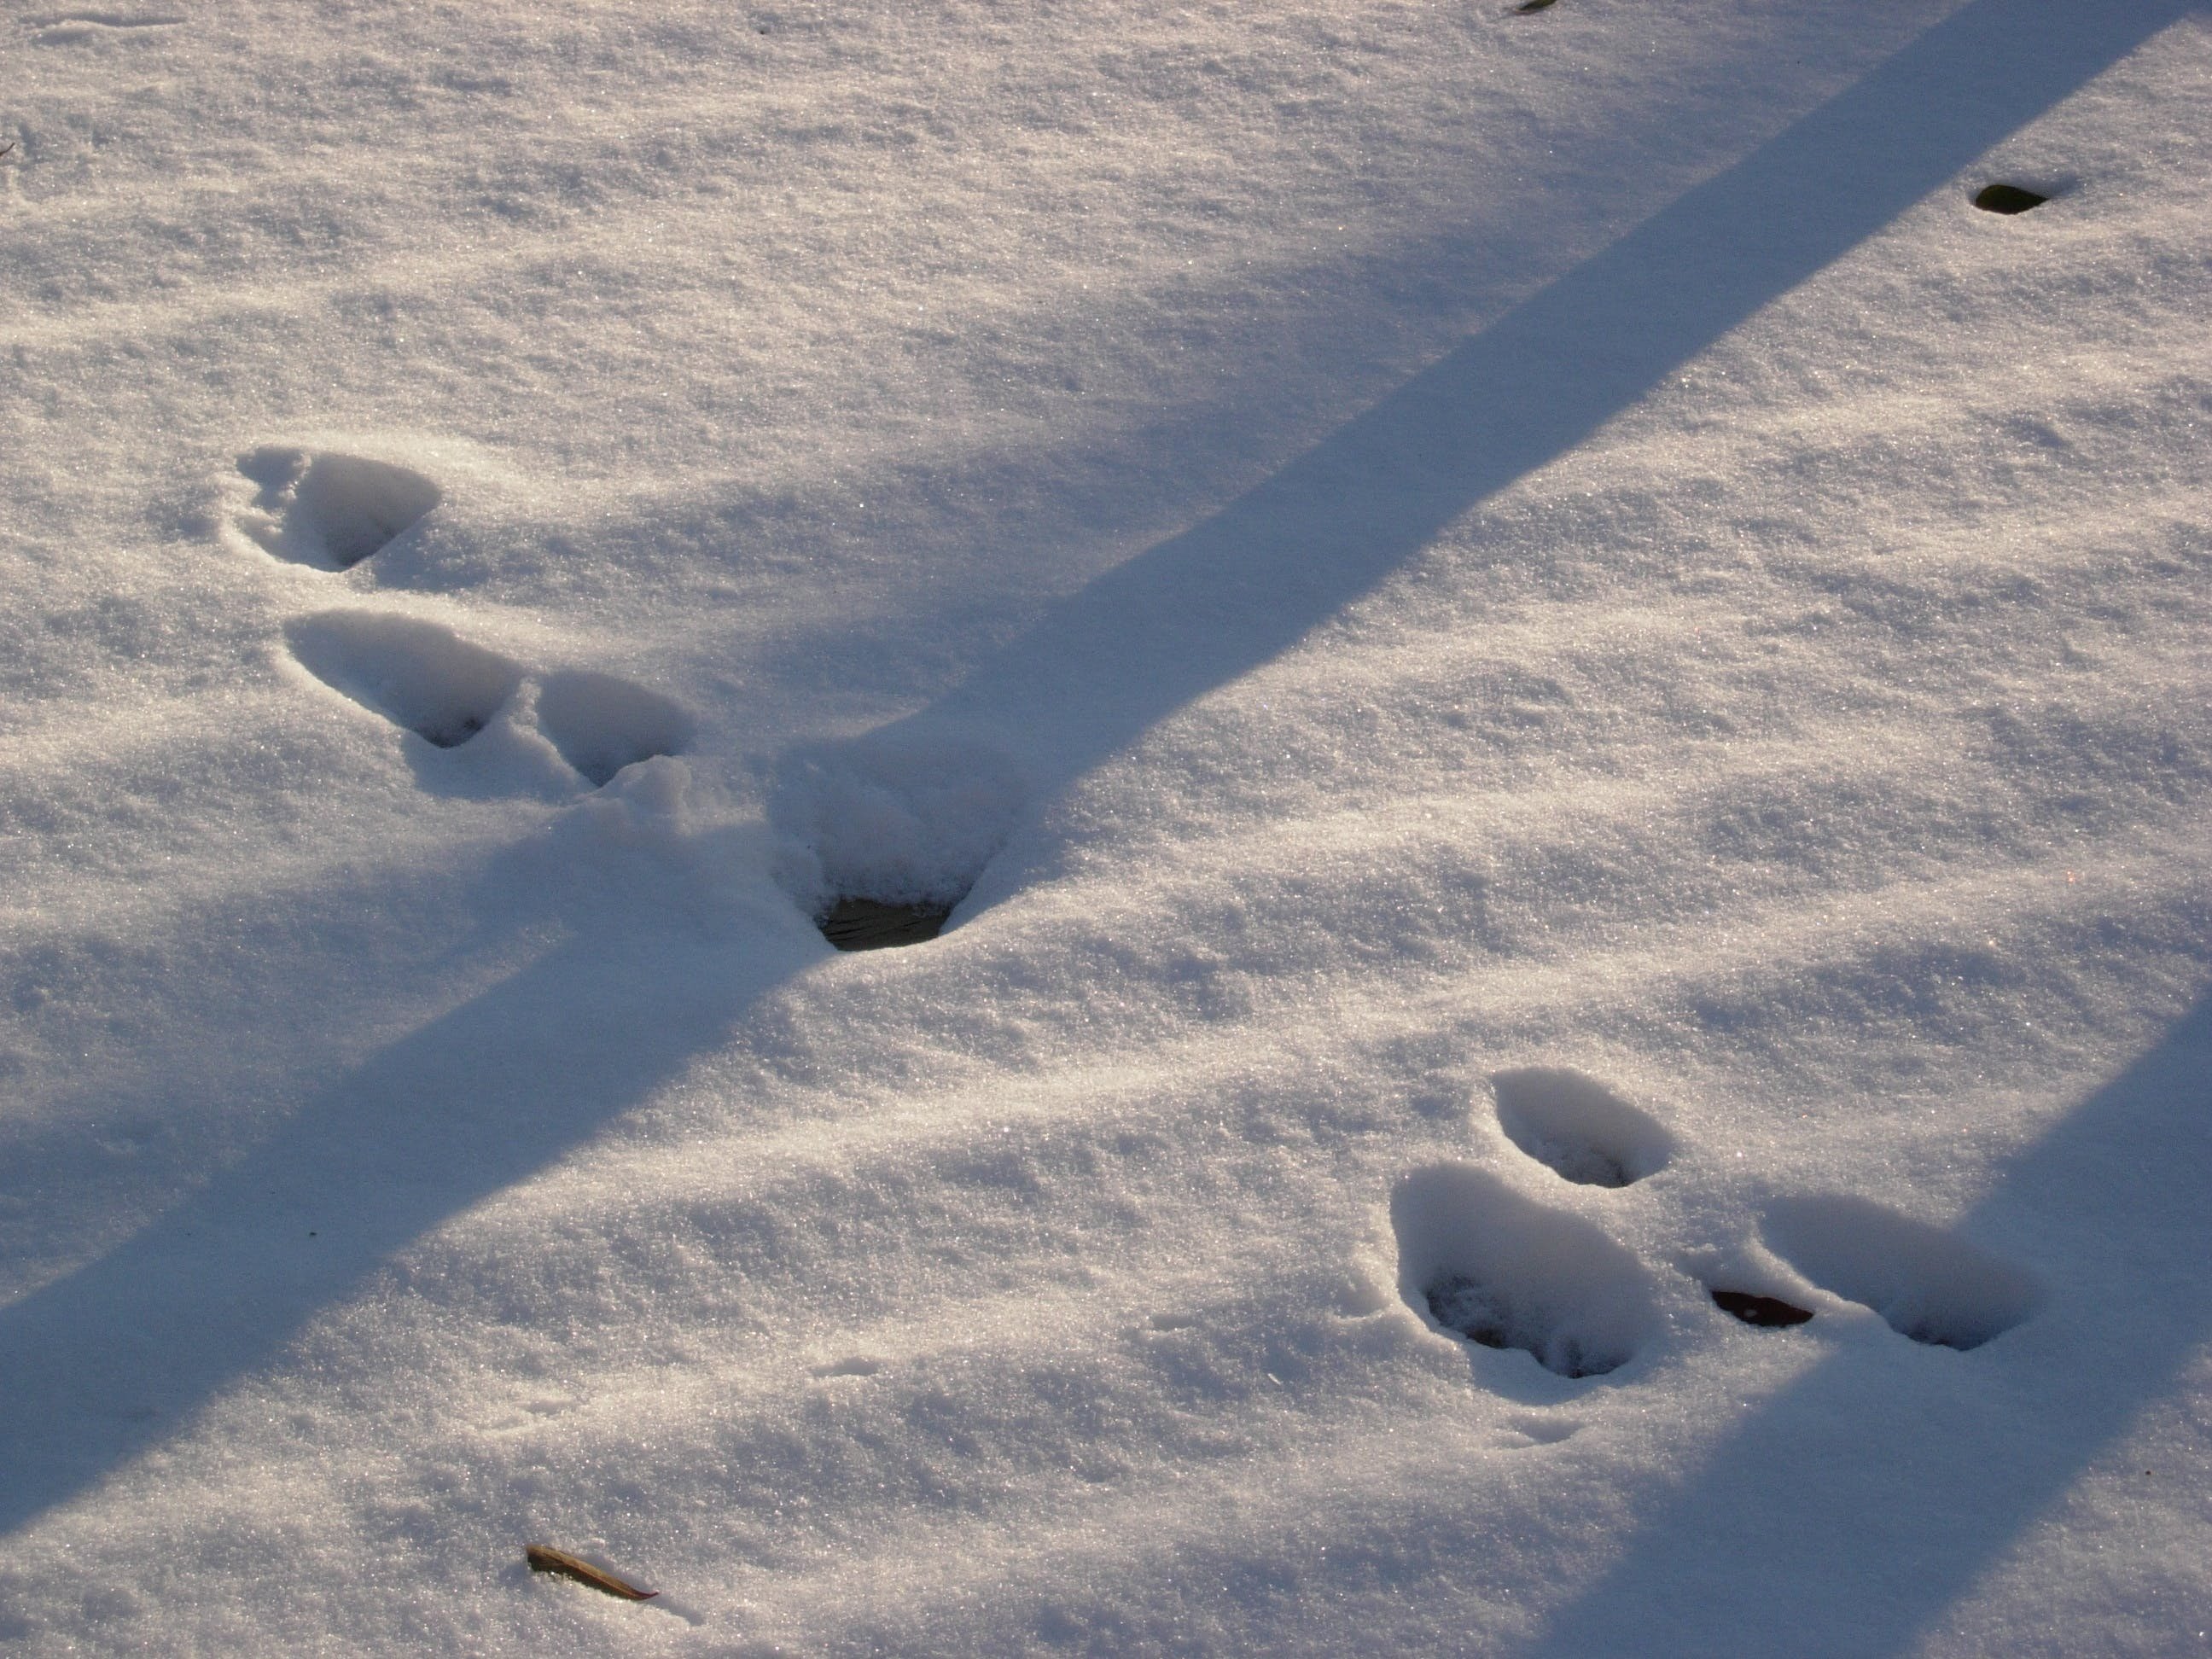 След зайца на снегу 5. Следы Ласкина снегу. Следы зайца беляка на снегу. Следы зайца беляка. Заяц толай следы.